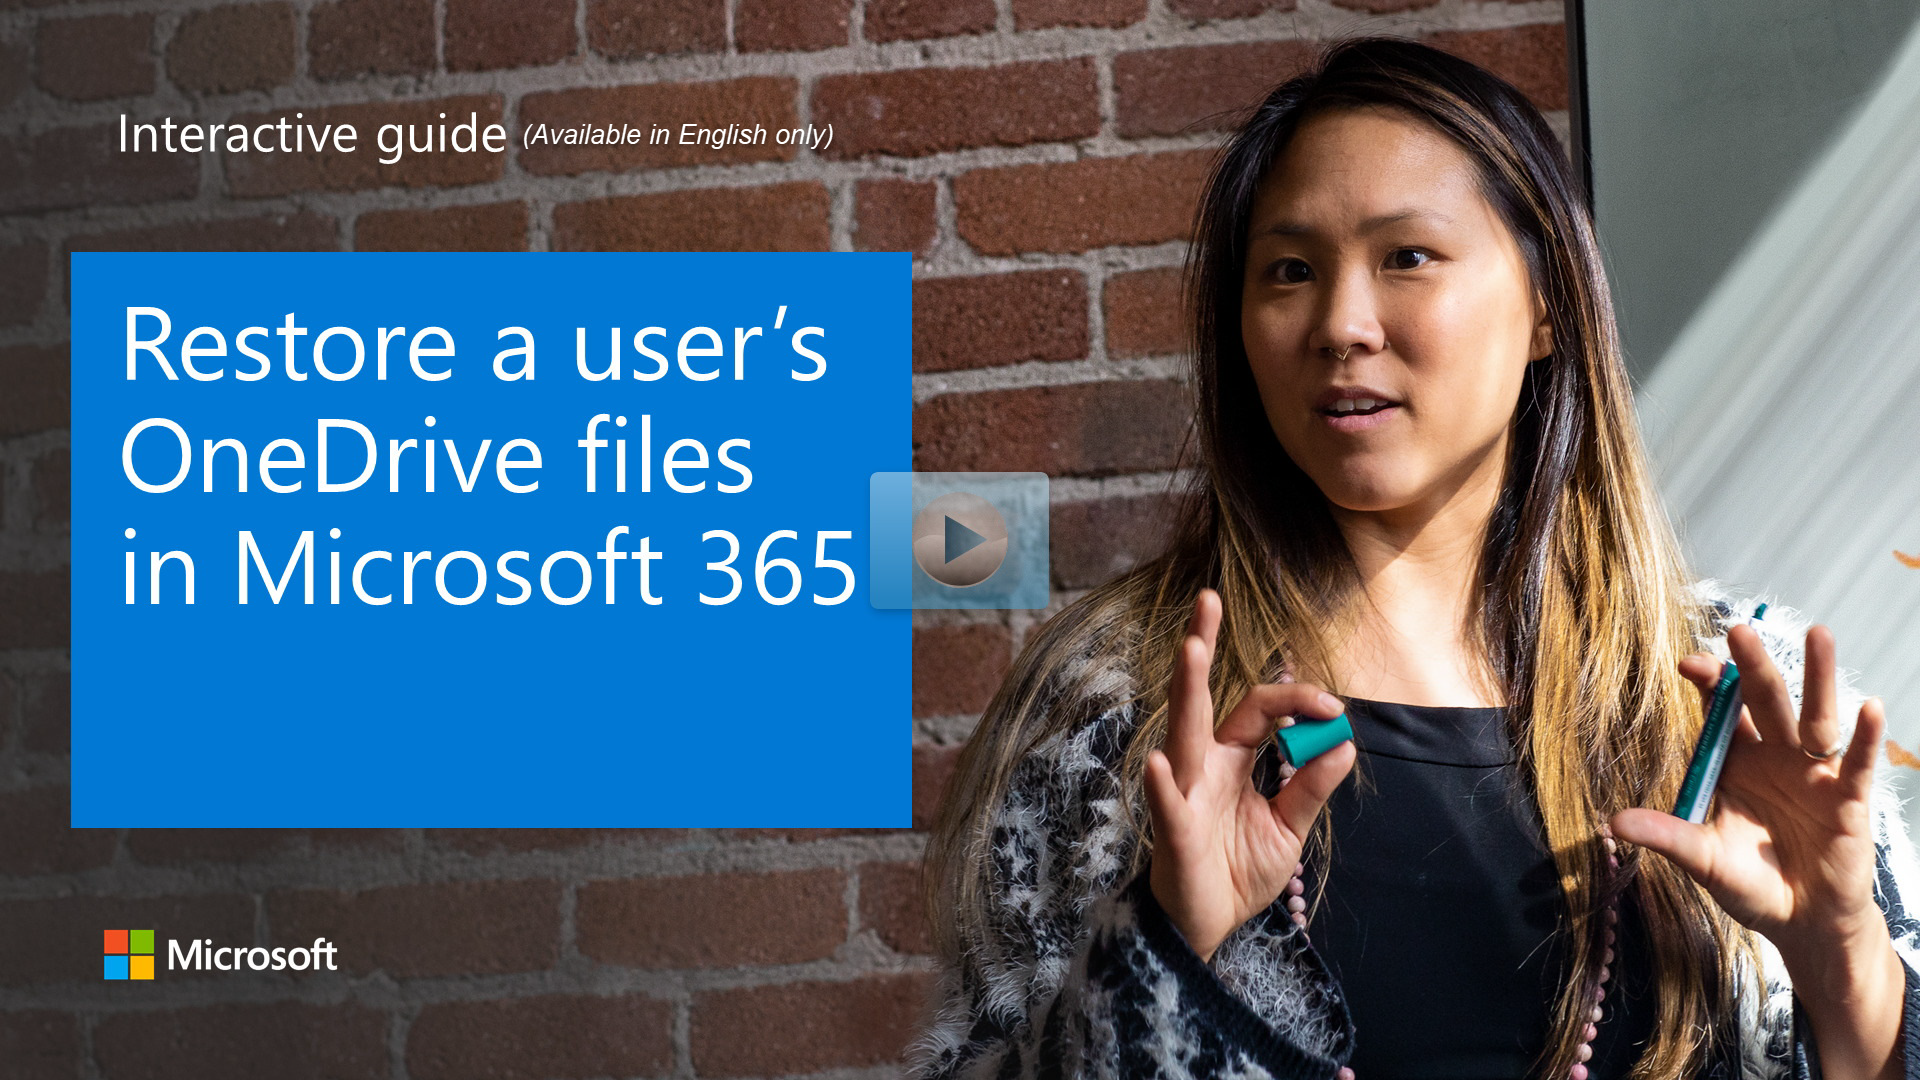 Restaurar archivos de OneDrive de un usuario en Microsoft 365